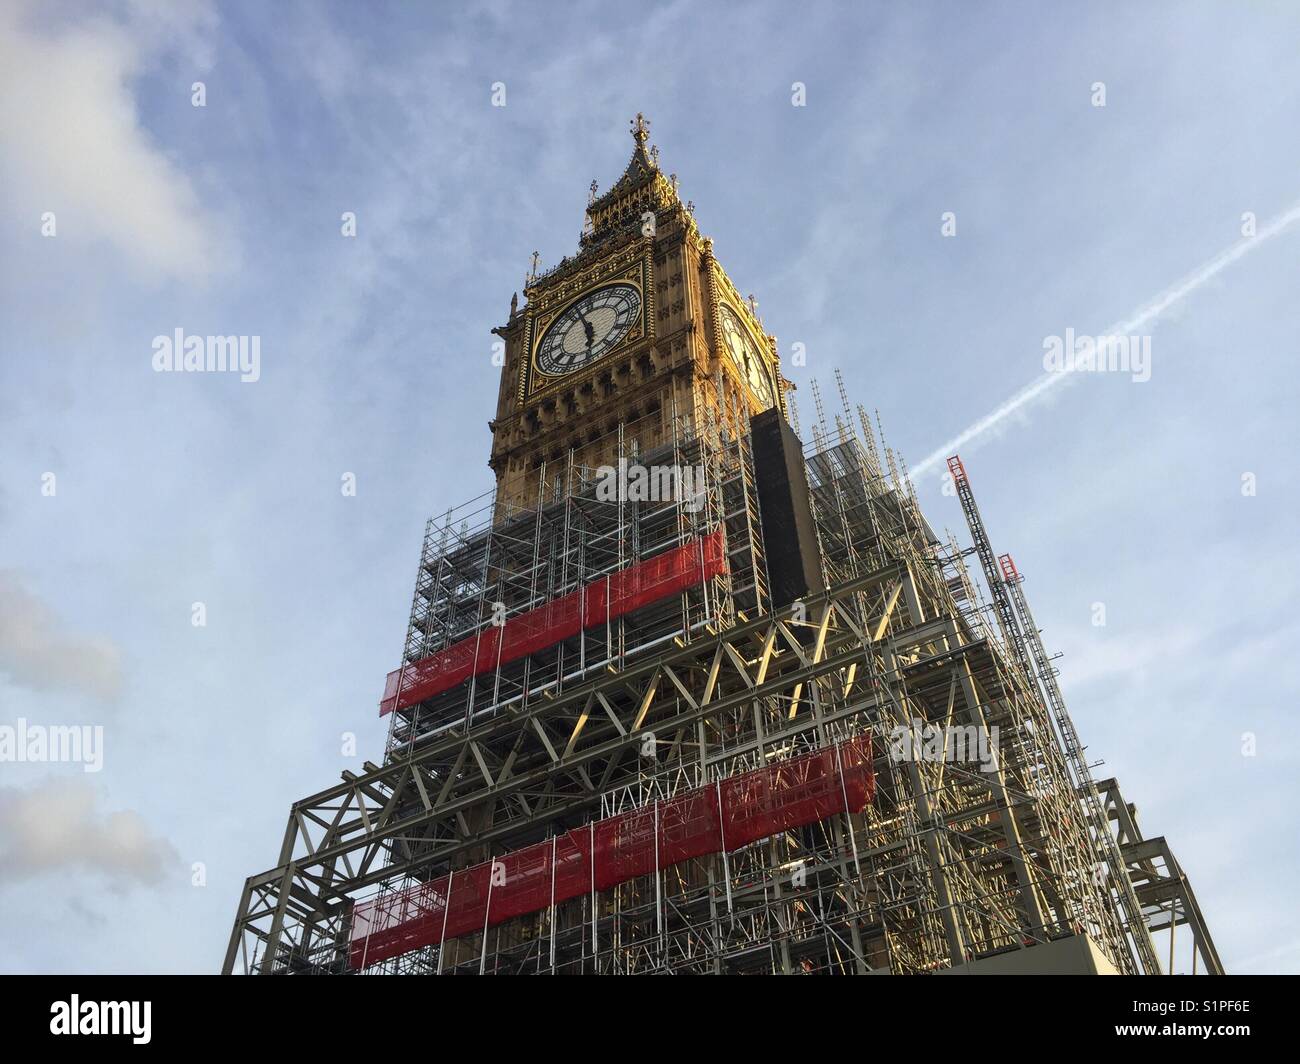 Ponteggio è visibile alla base della torre di Elizabeth, Big Ben, durante i lavori di restauro va avanti presso le Case del Parlamento europeo a Londra Inghilterra Foto Stock